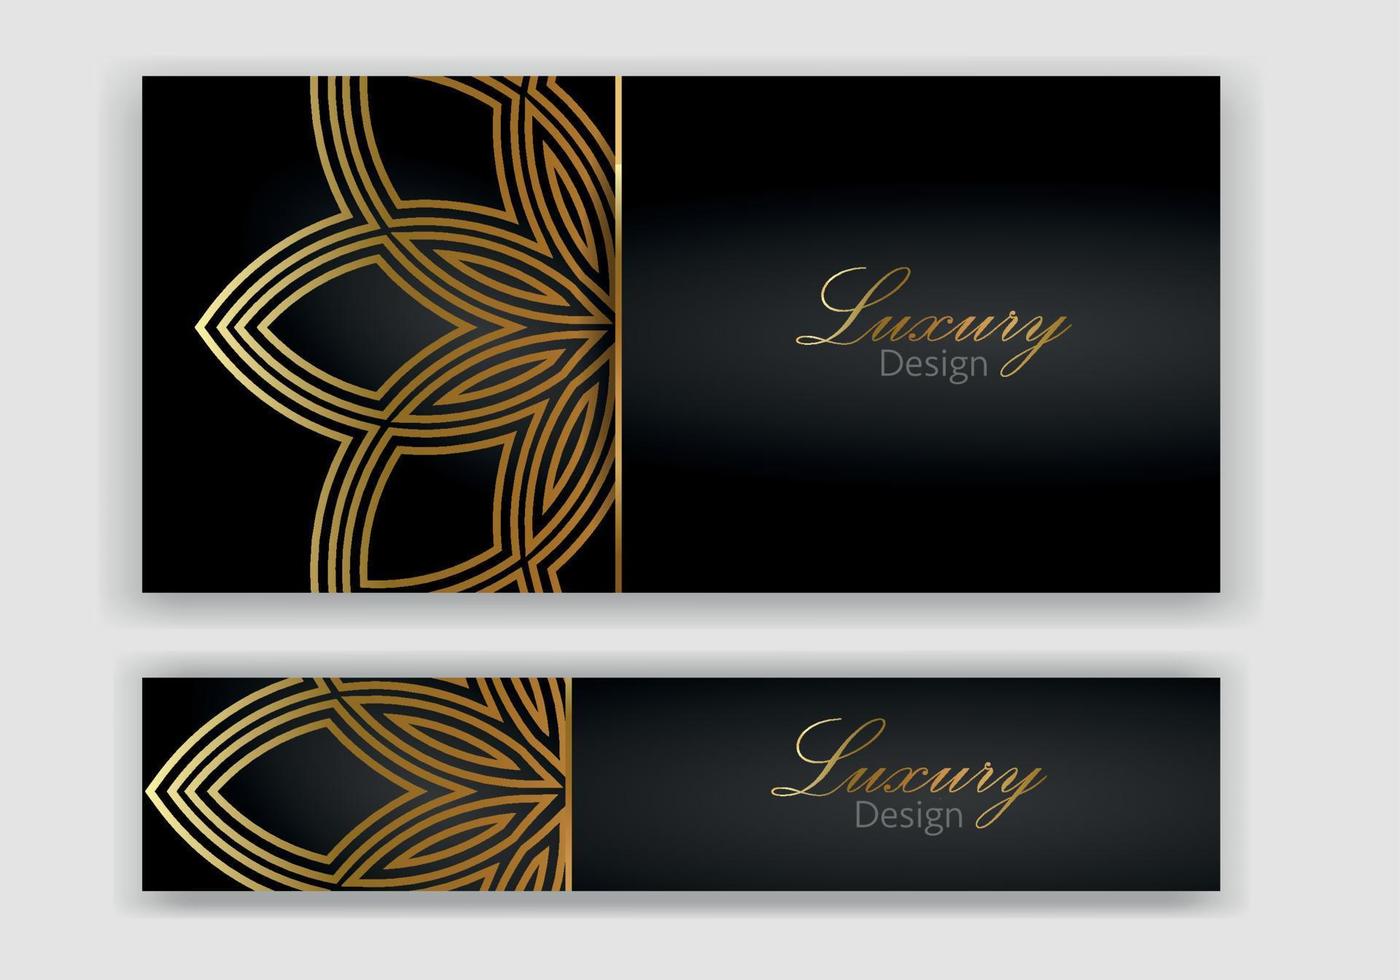 modernes banner-design-set. luxus schwarz, goldener hintergrund mit abstraktem muster. Premium-Vektorvorlage für Menü, Einladung, Broschürenvorlage, Lux-Flyer vektor